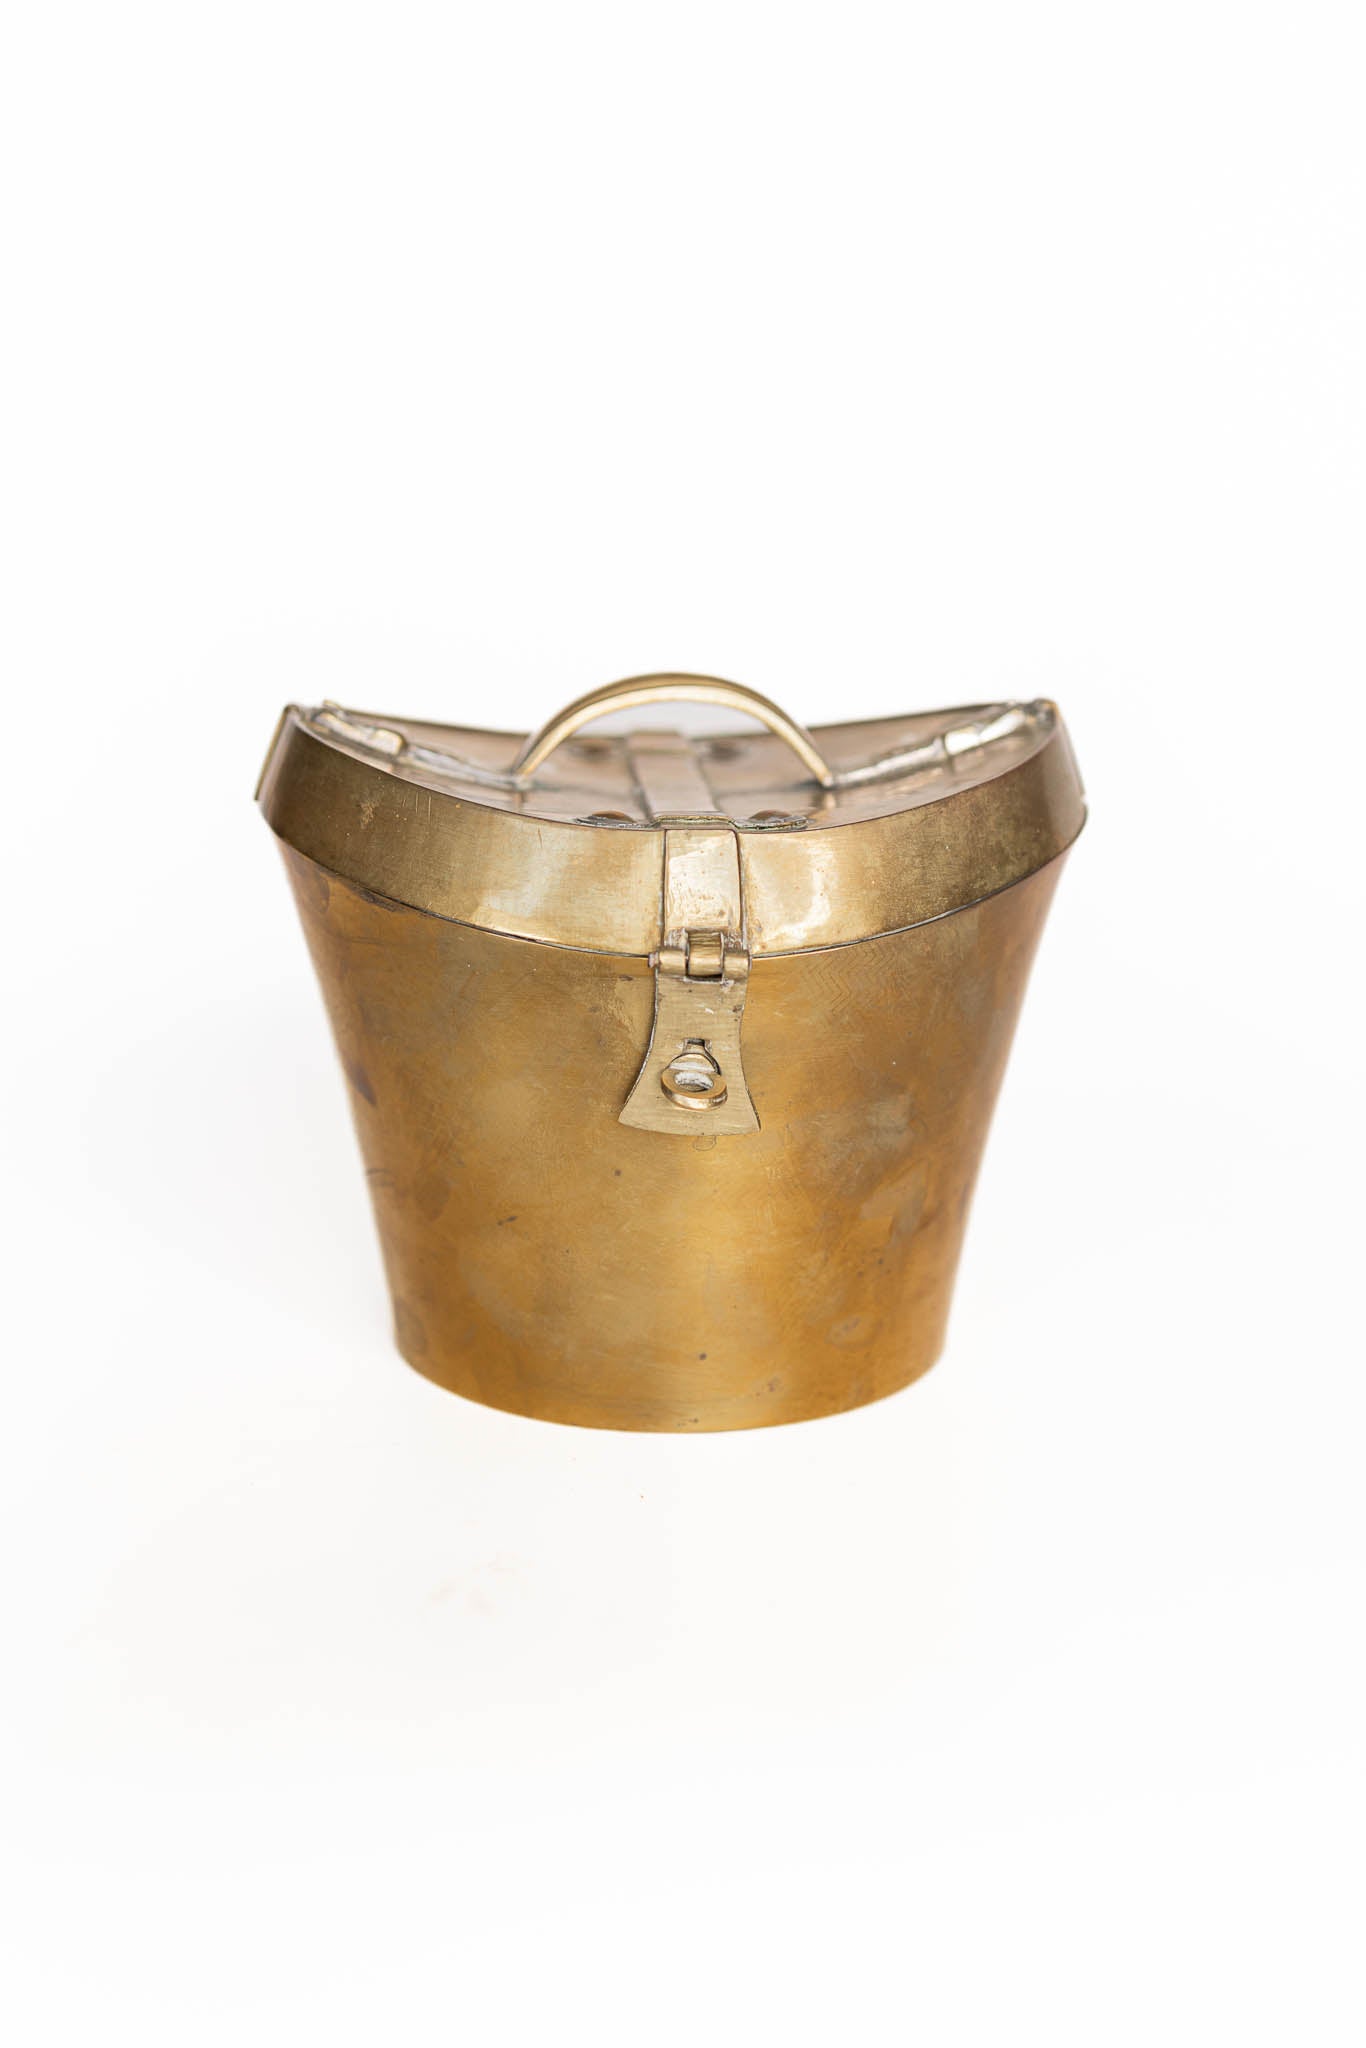 Antique Brass Hat Box